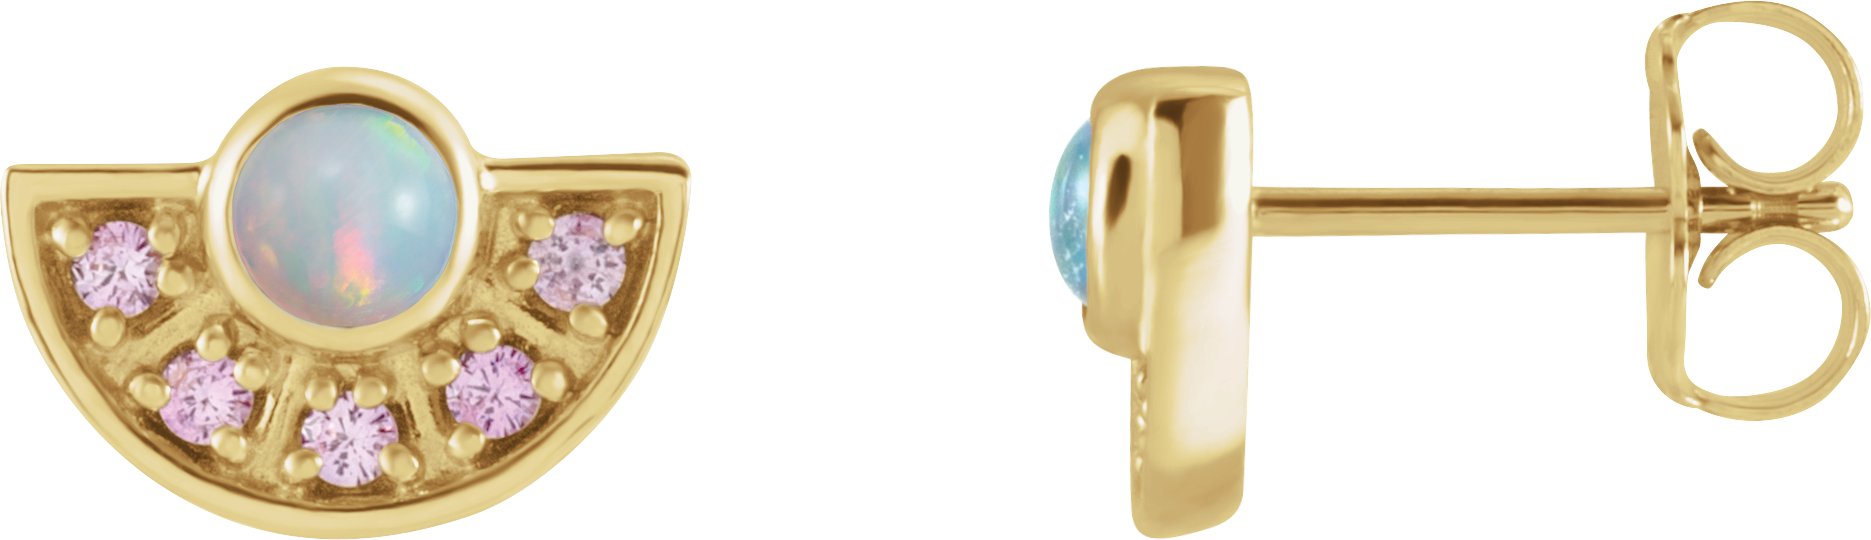 14K Yellow Ethiopian Opal and Pink Sapphire Fan Earrings Ref. 16854636